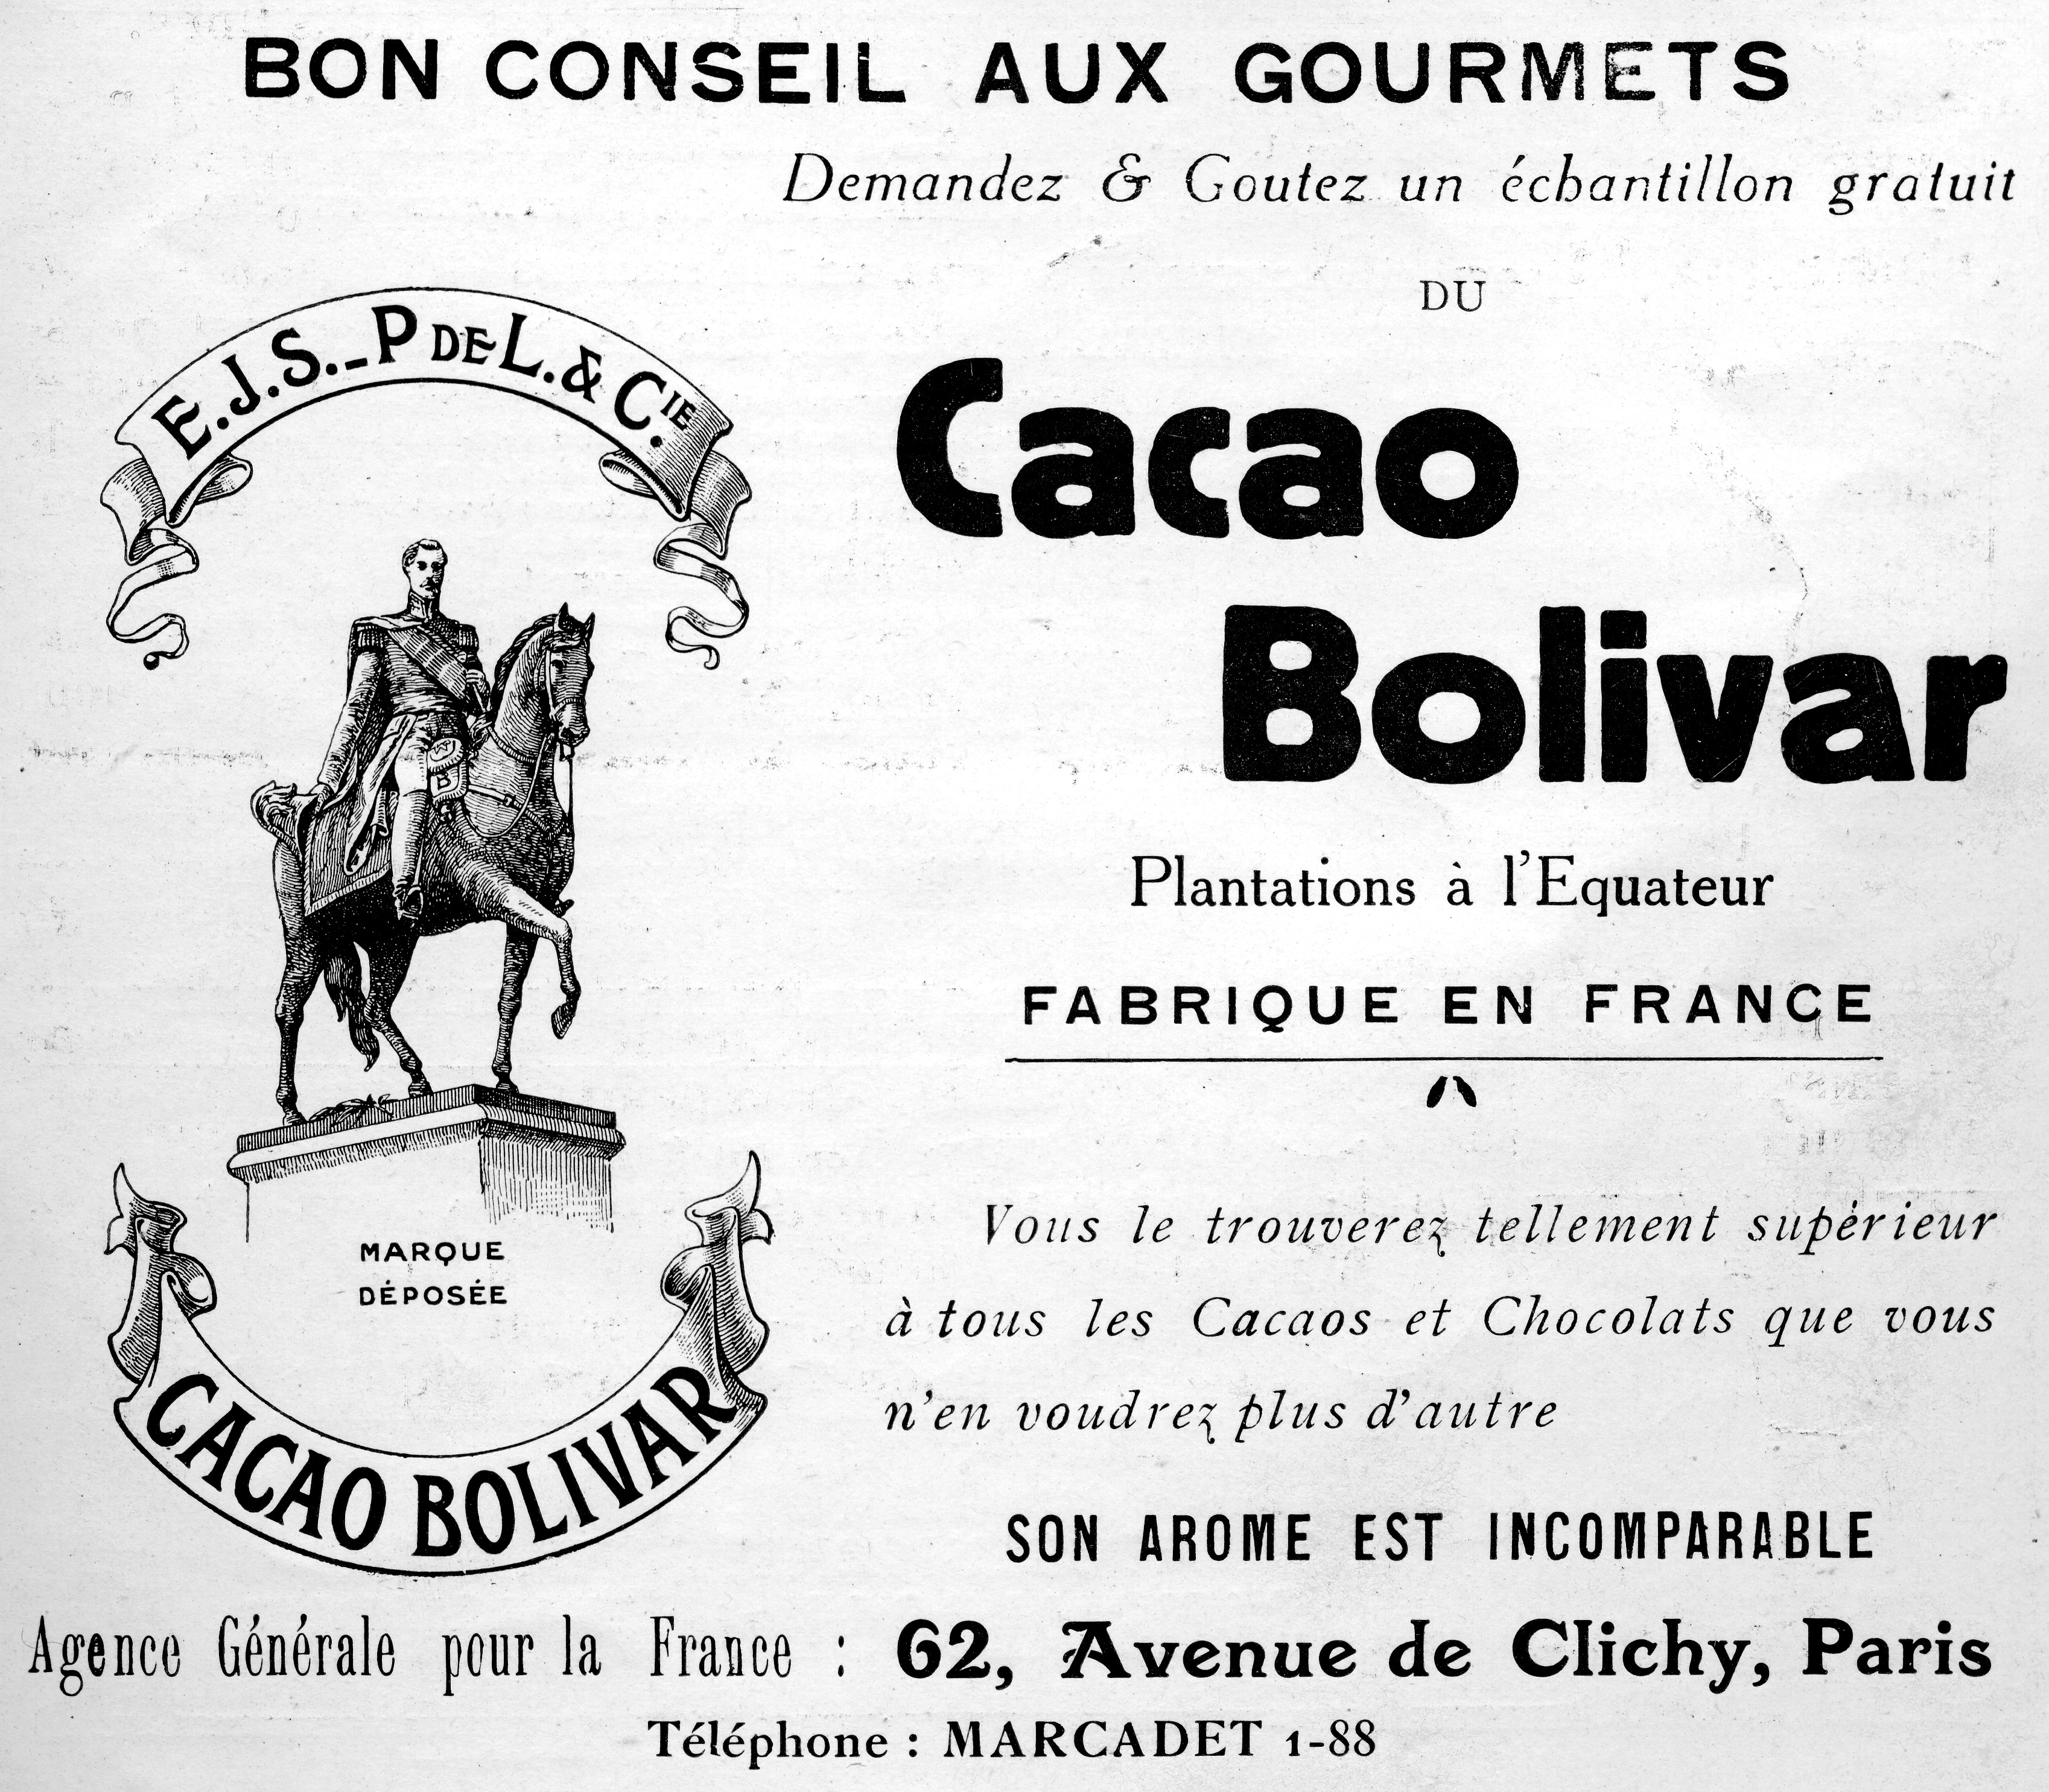 Cacao bolivar